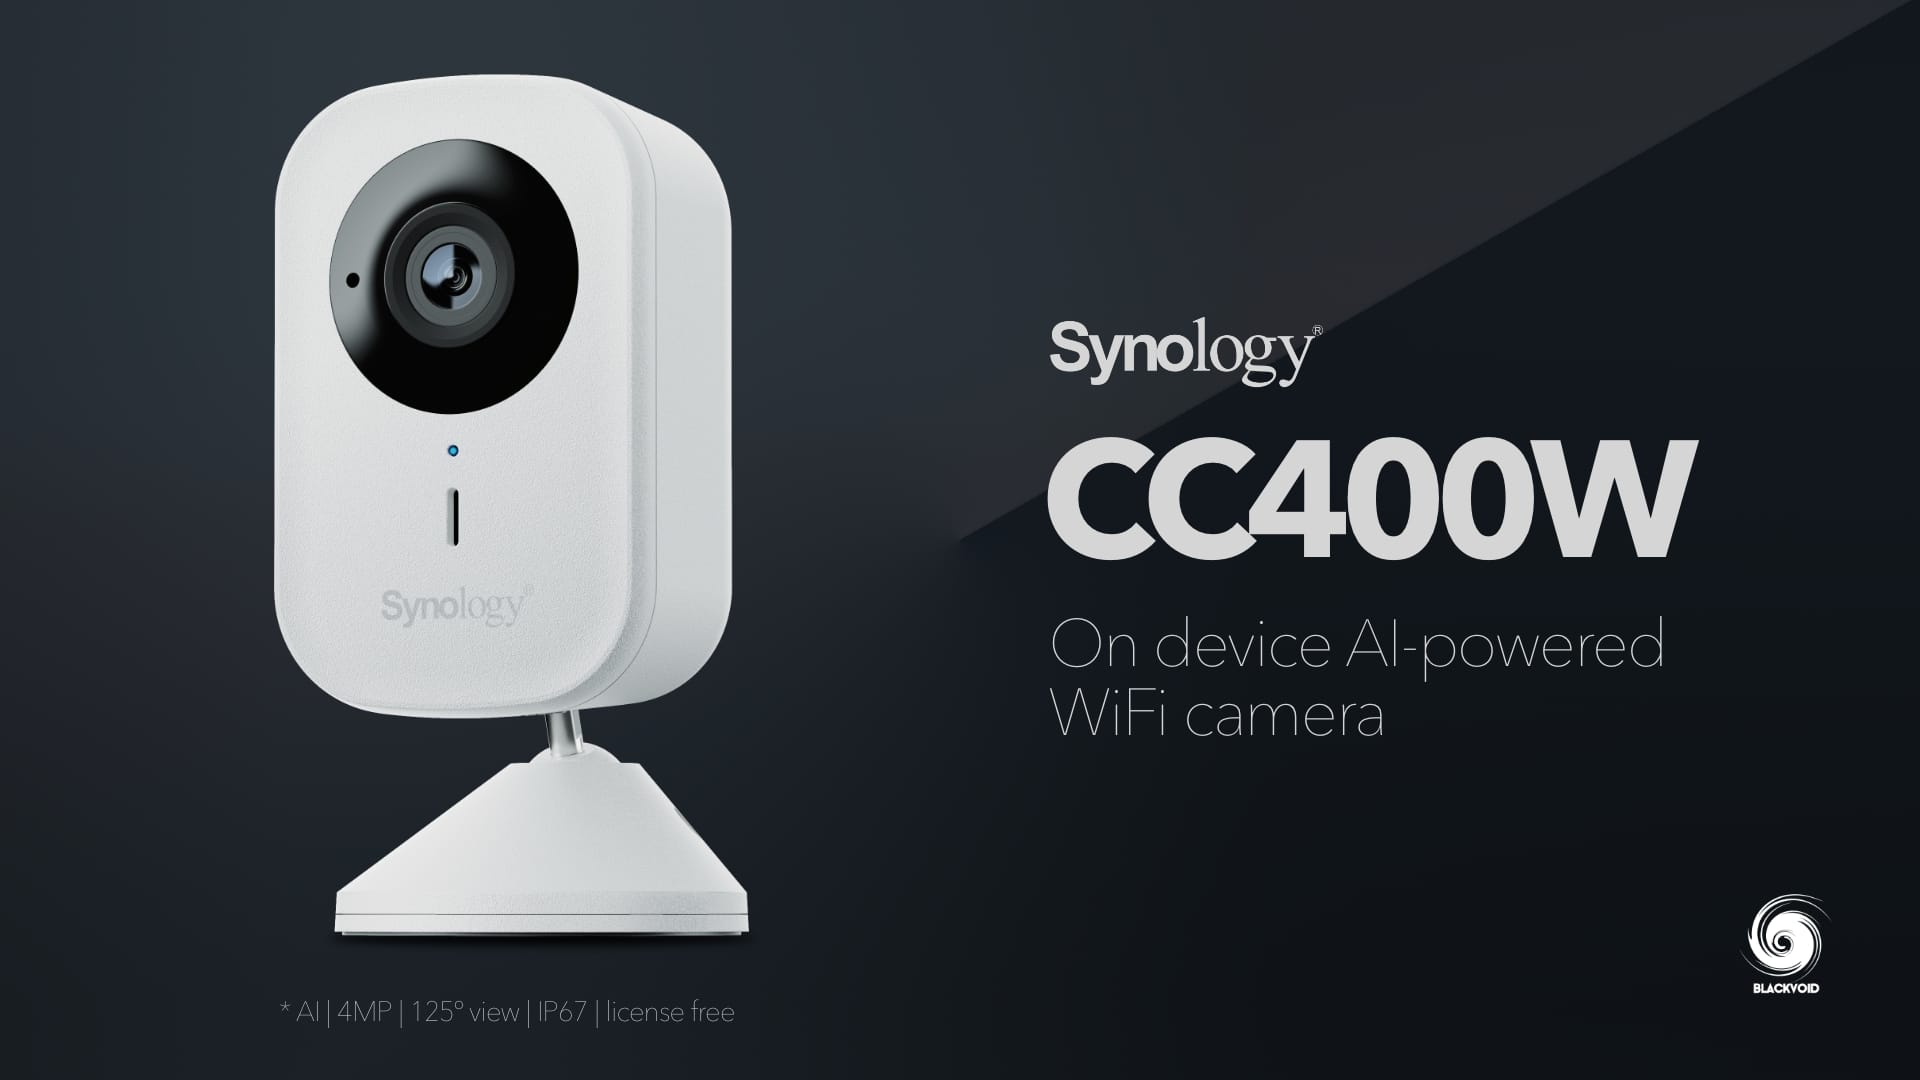 Synology CC400W Wi-Fi camera